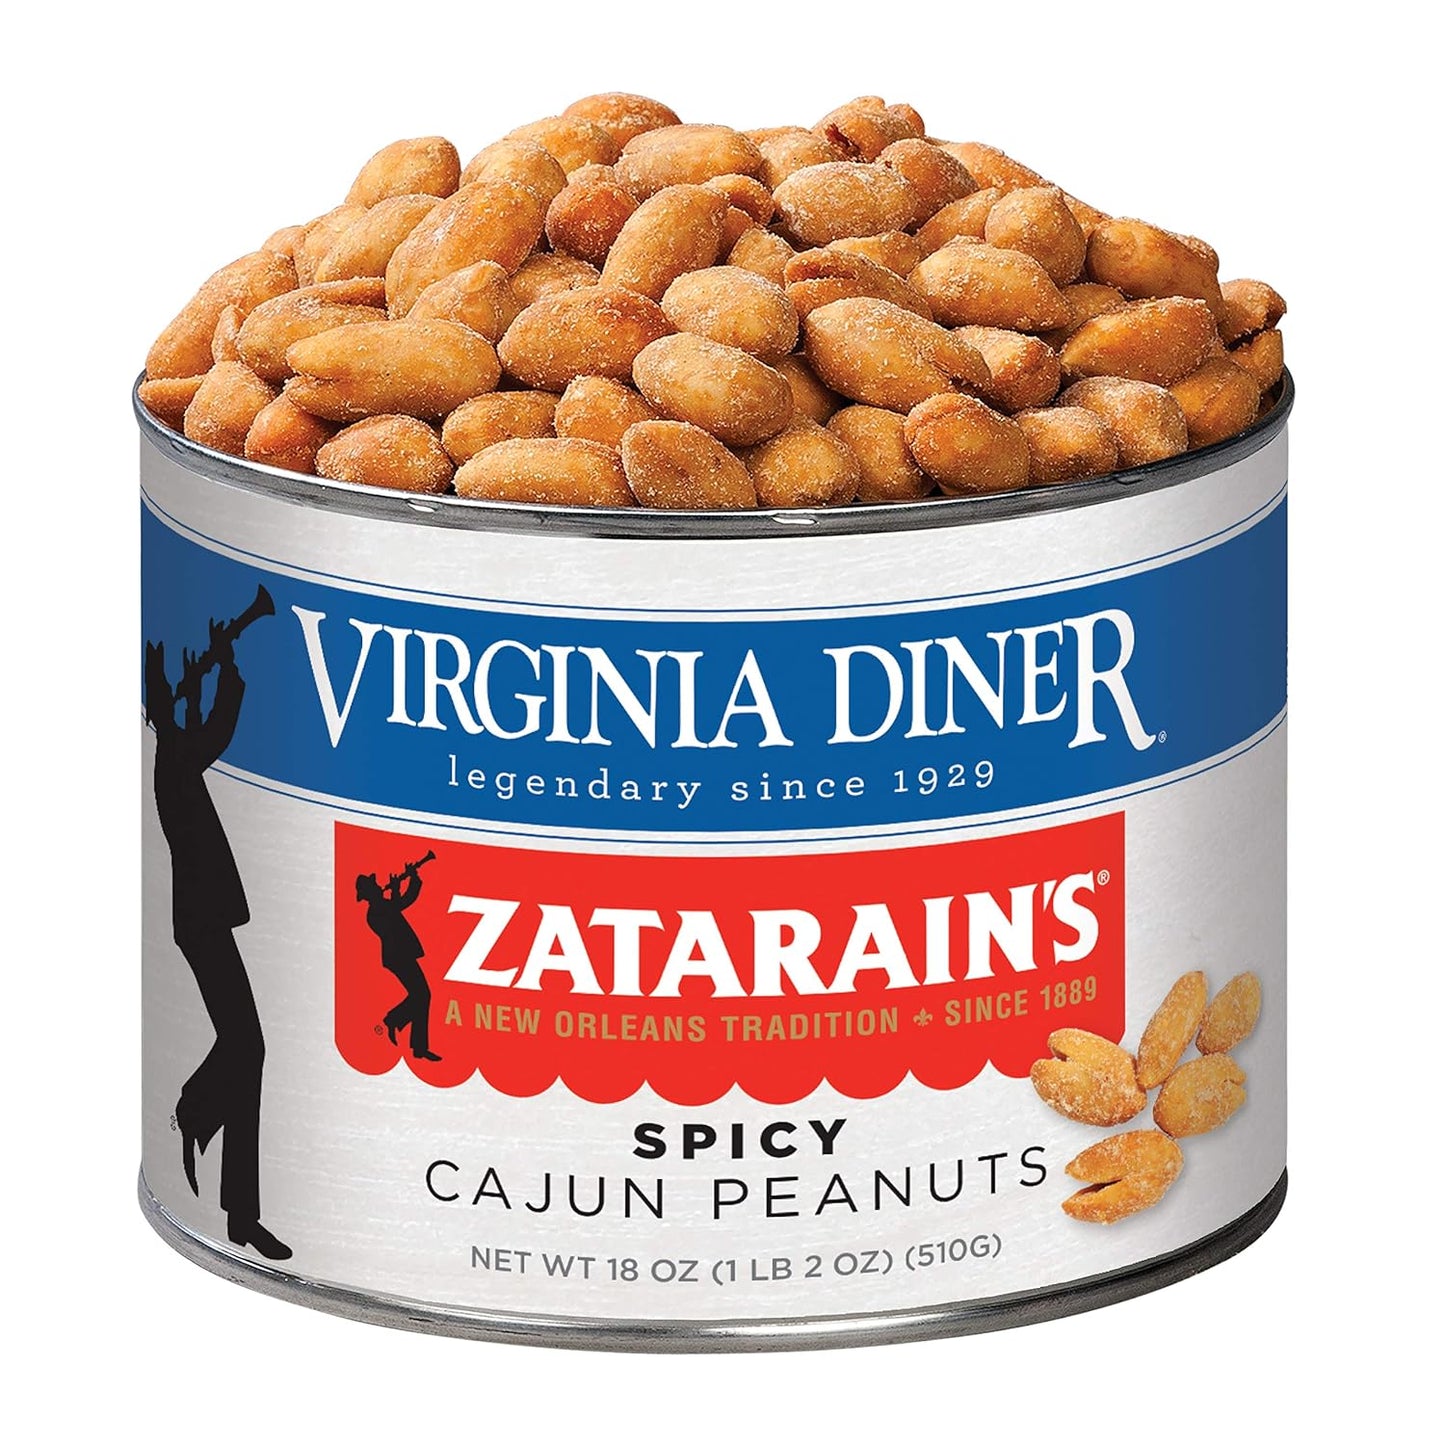 Virginia Diner - Zatarain's® Spicy Cajun Virginia Peanuts (9 oz)